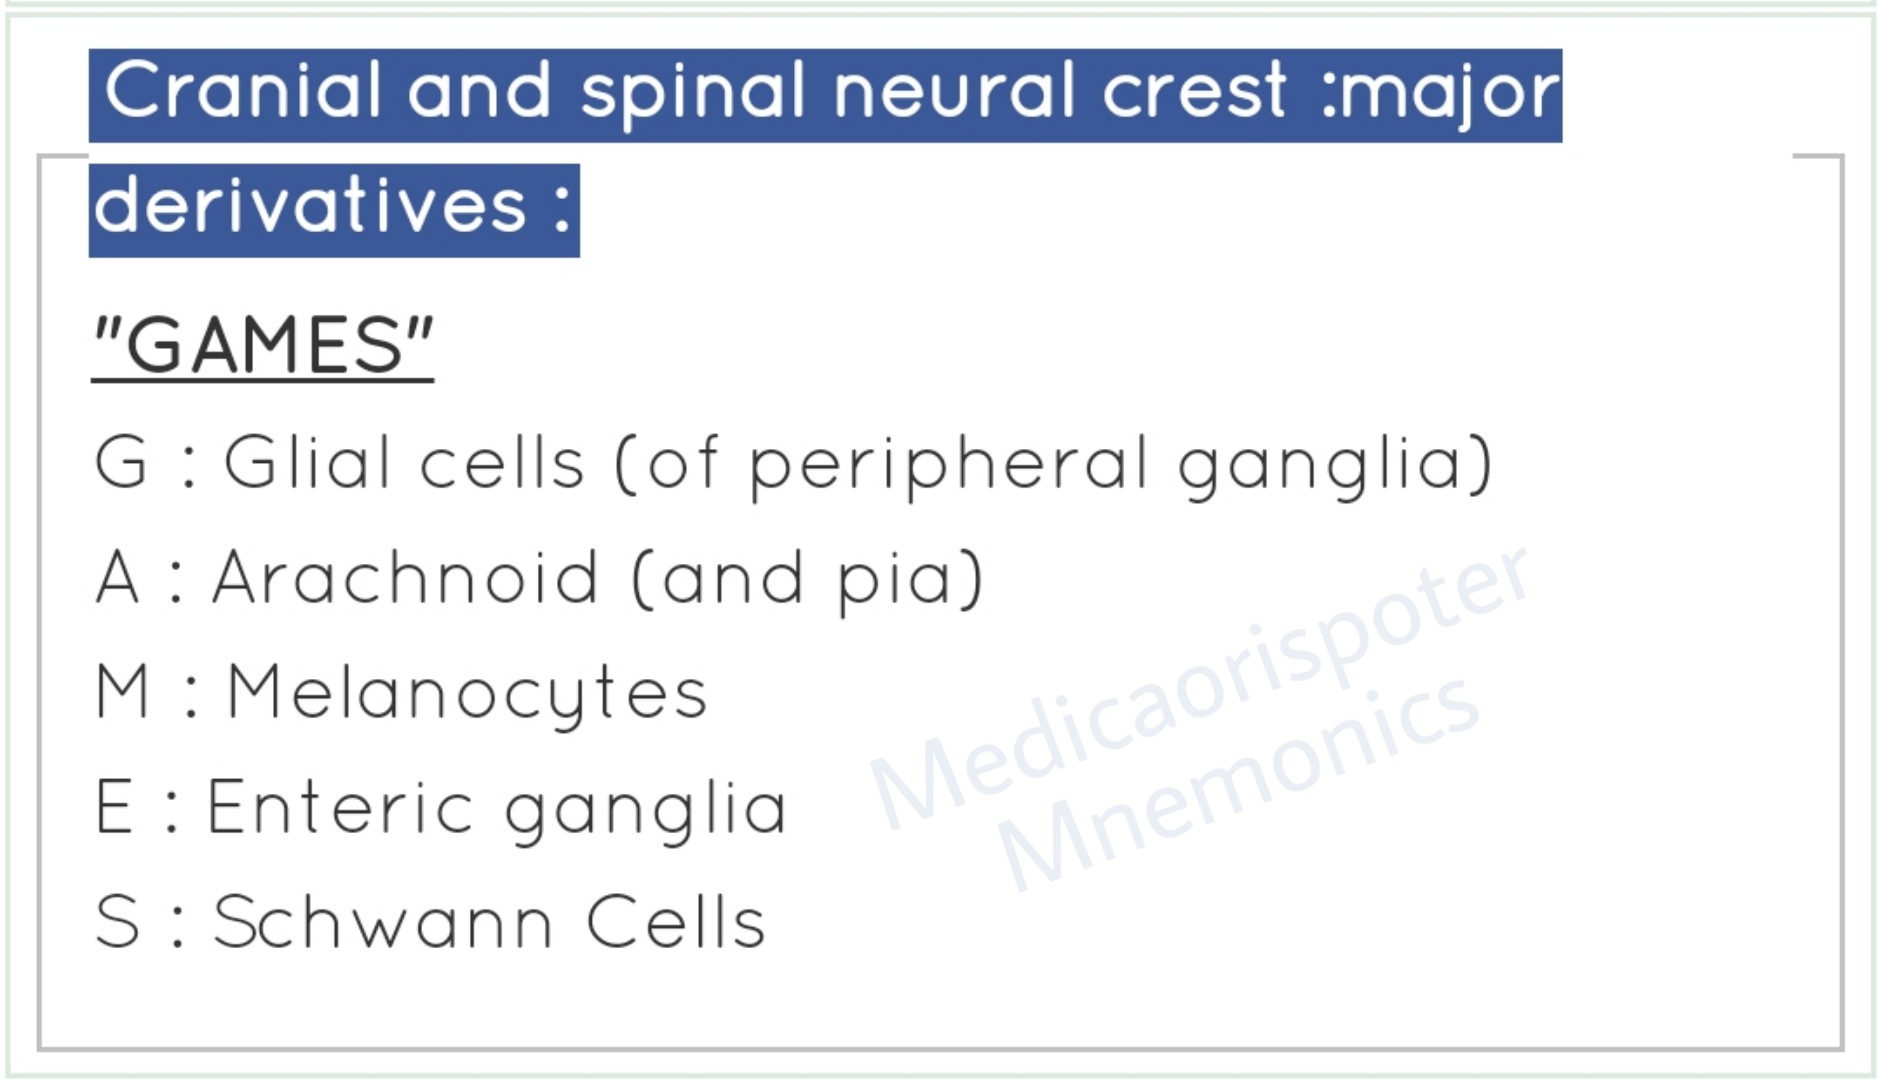 Derivatives of Cranial  Spinal Neural Crest